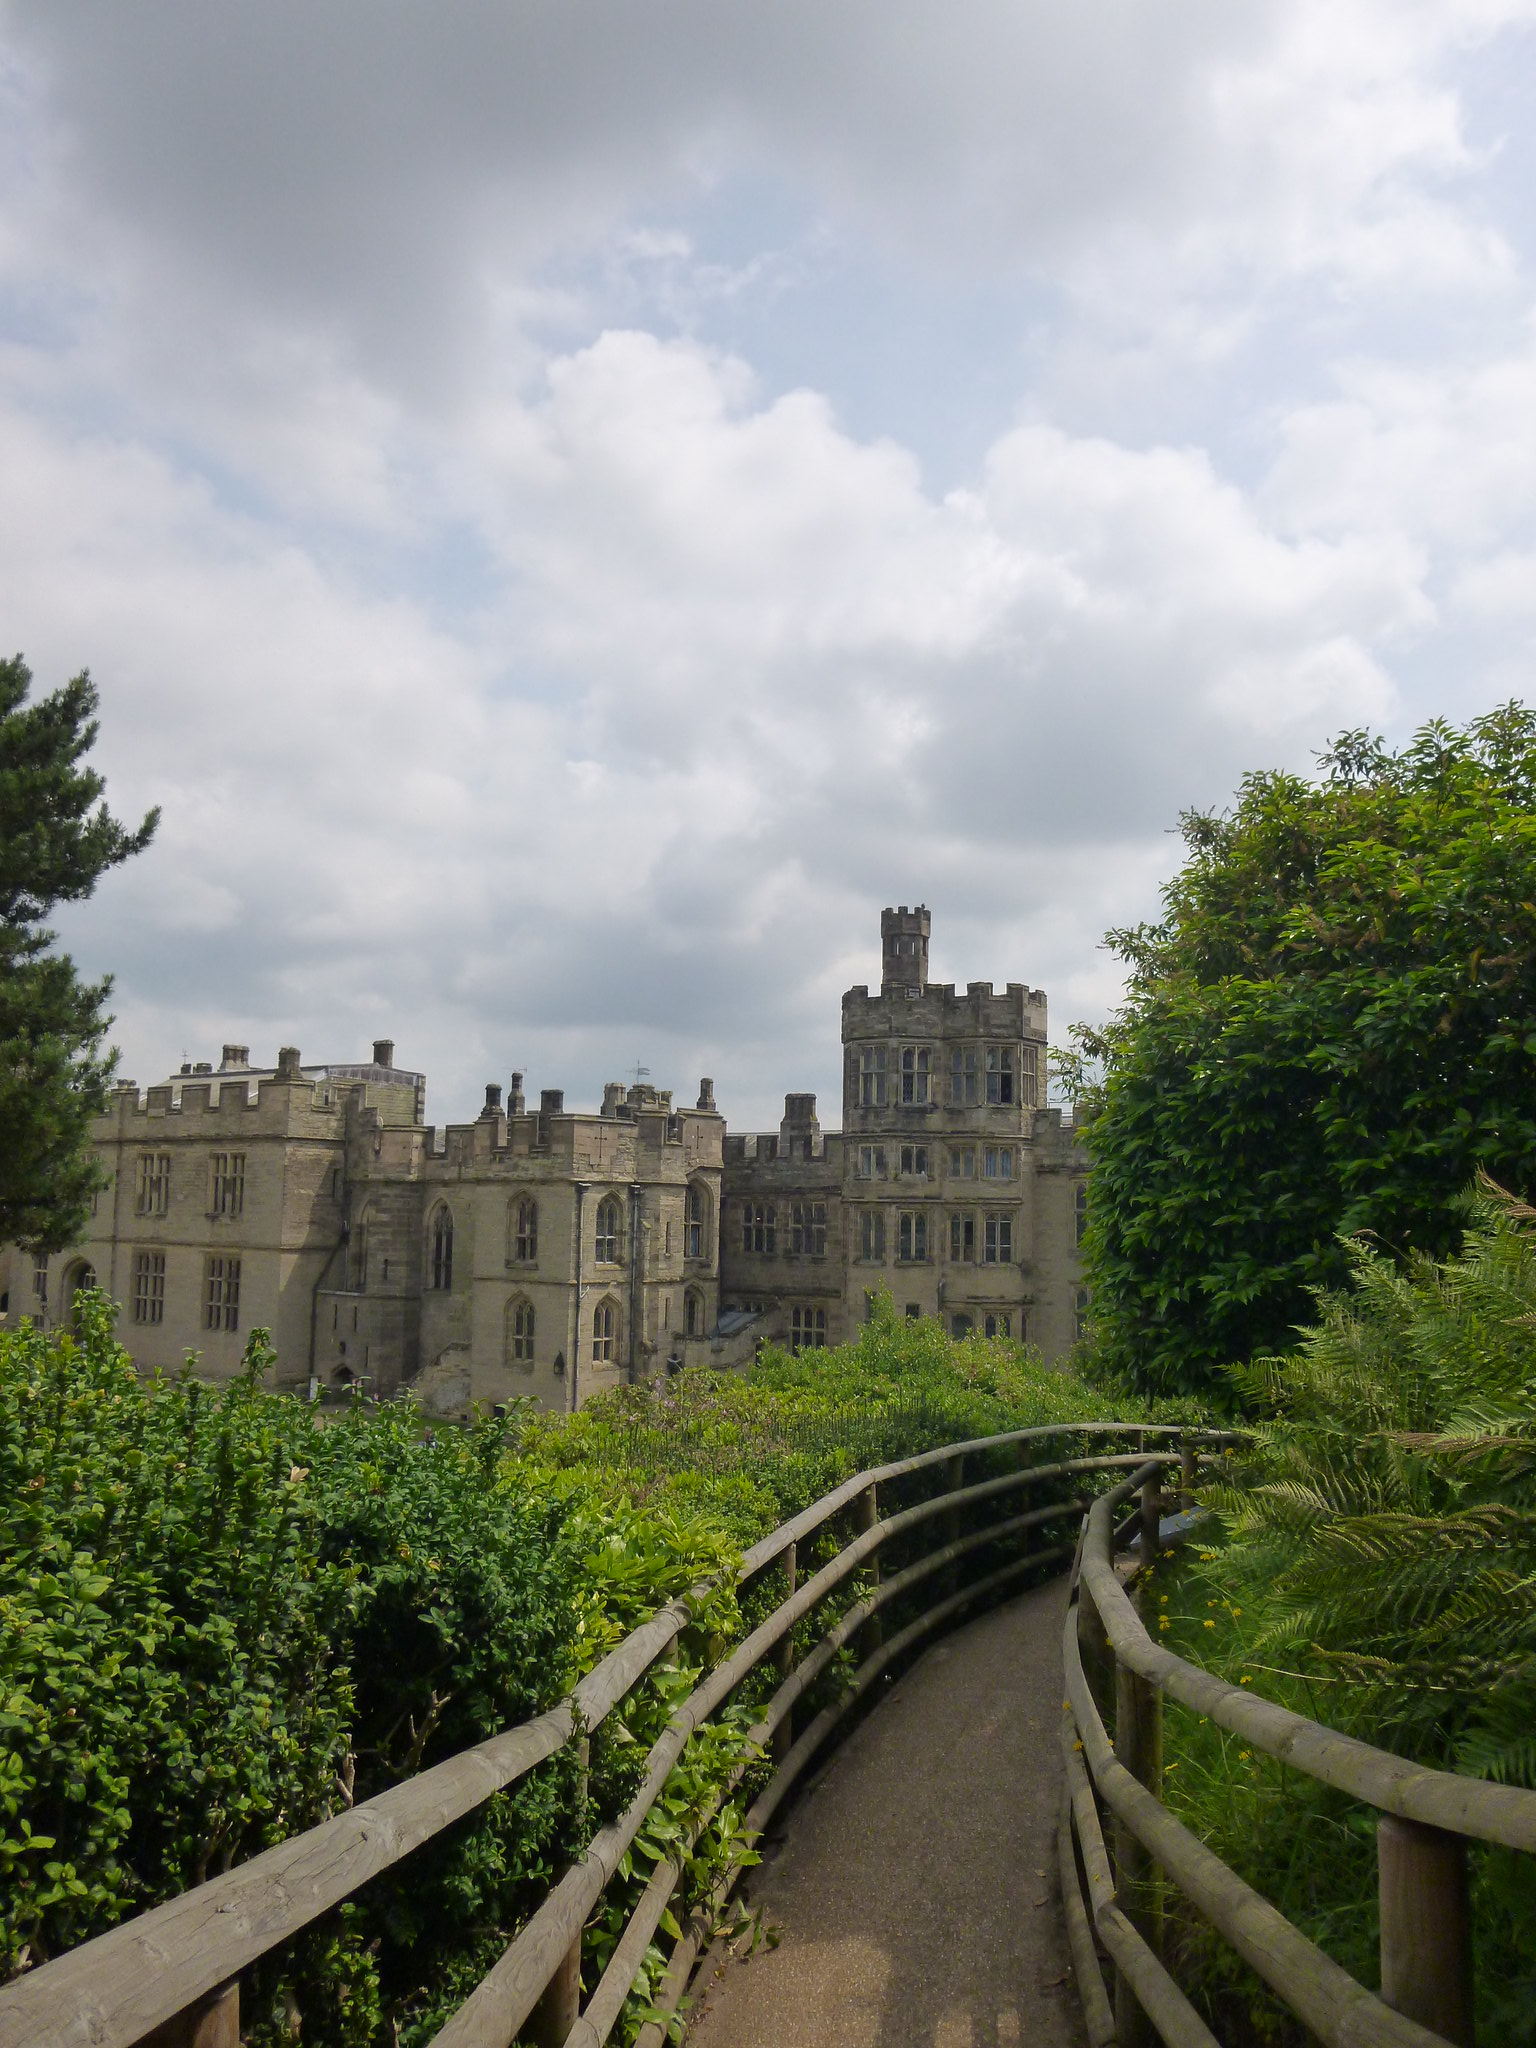 View of Warwick Castle